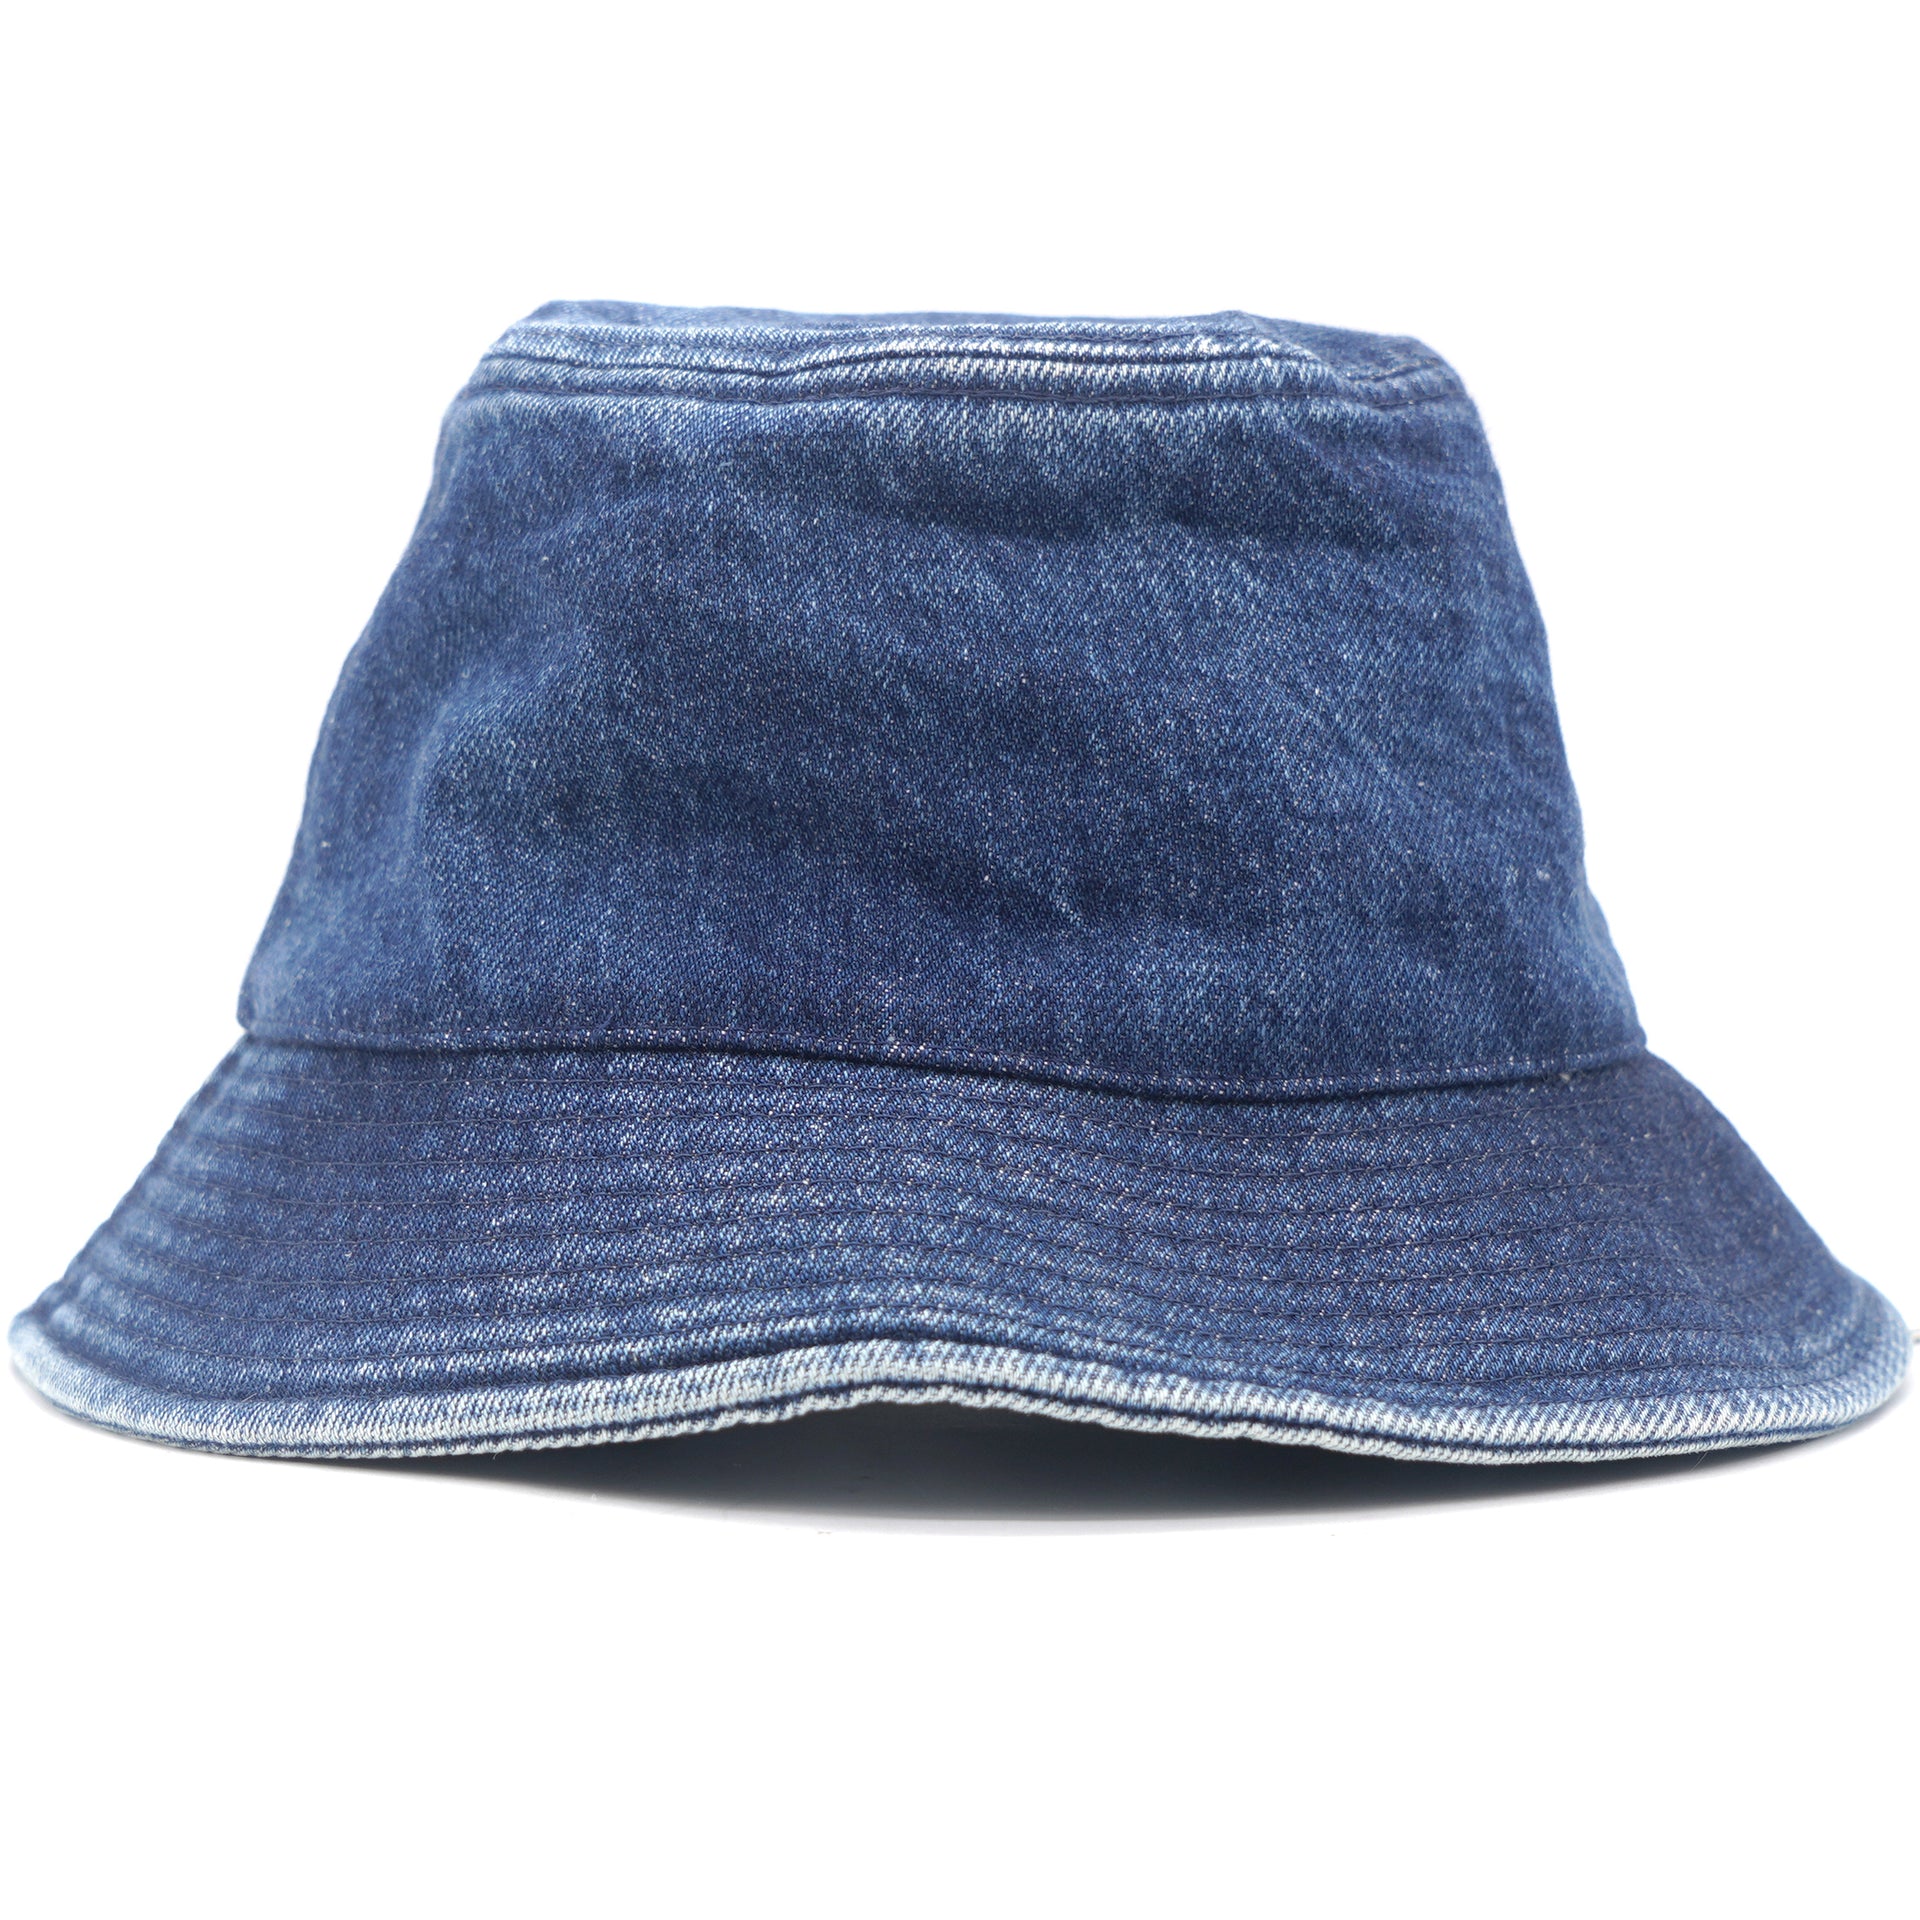 Embroidered Bucket Hat In Union Wash Denim Union Wash